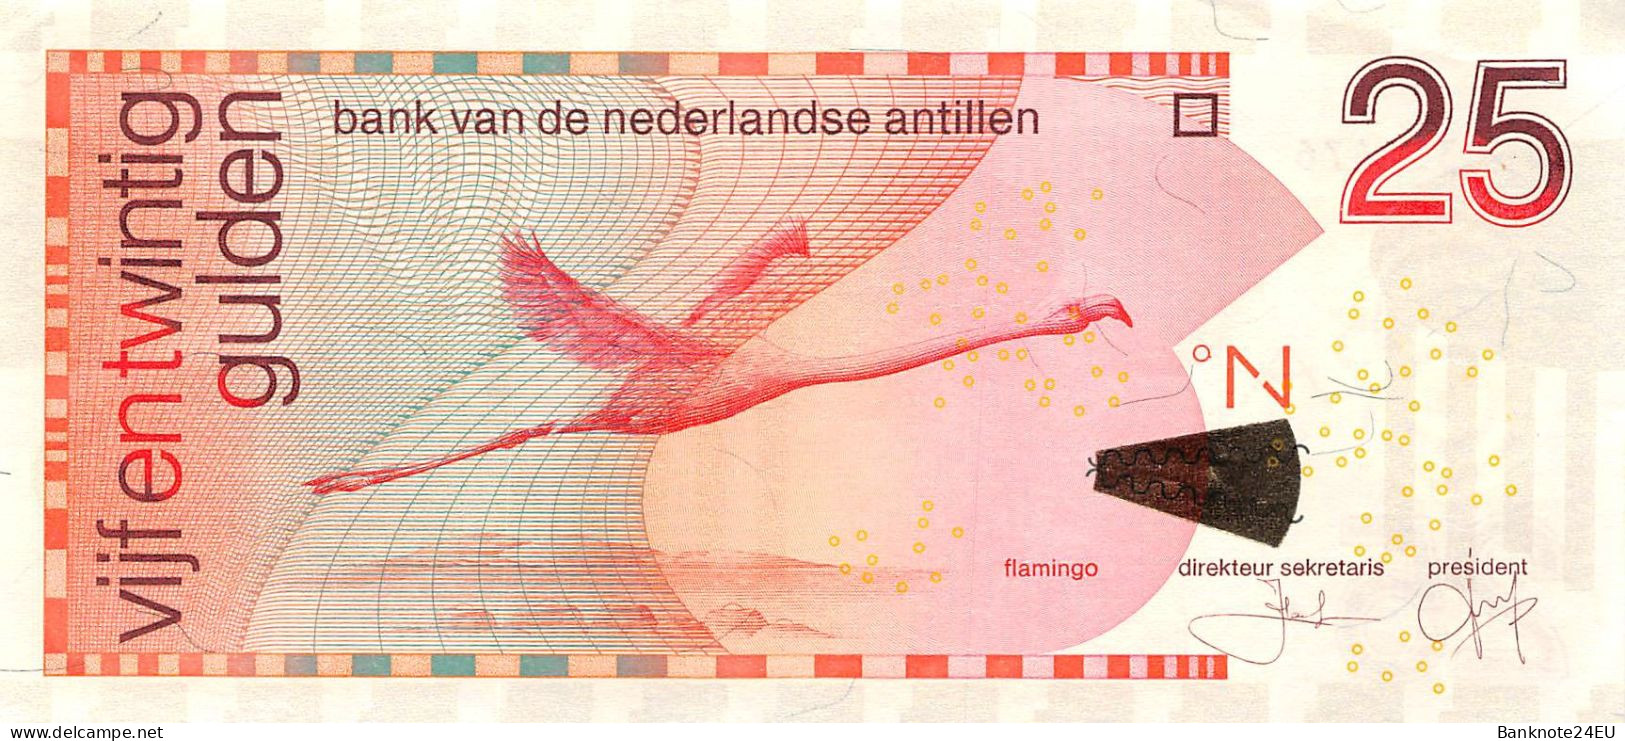 Netherlands Antilles 25 Gulden 2011 Xf Pn 29f Serienumber 4150351476 - Niederländische Antillen (...-1986)